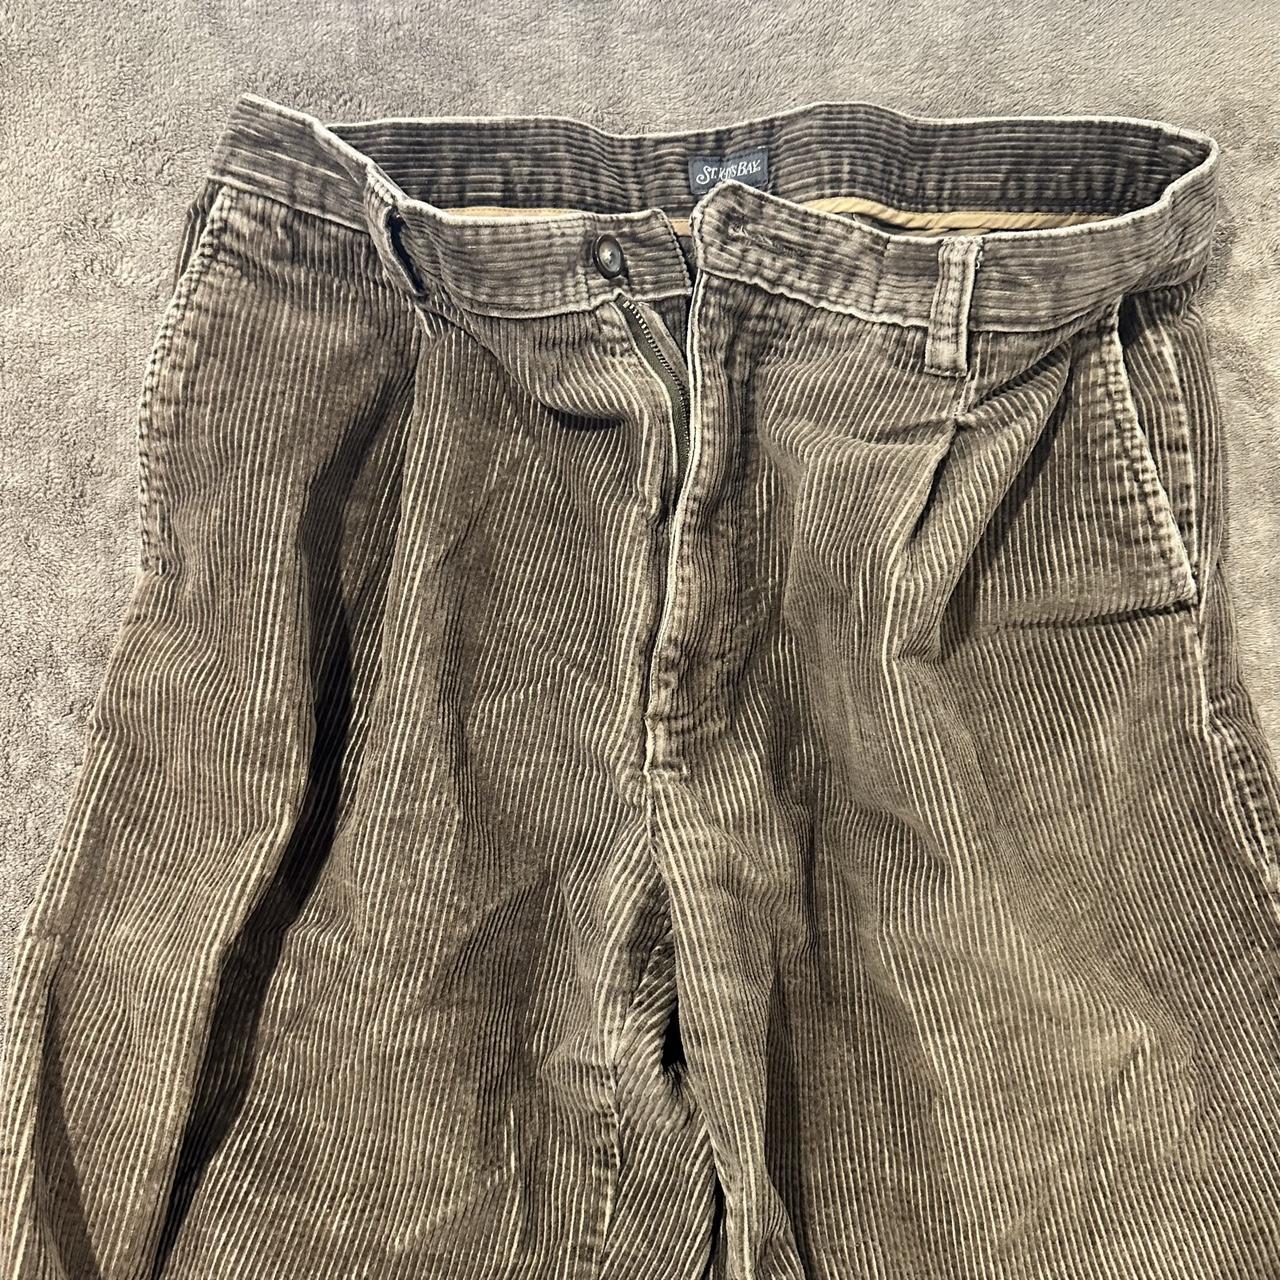 Baggy Brown Vintage Corduroy Pants by St. John’s... - Depop